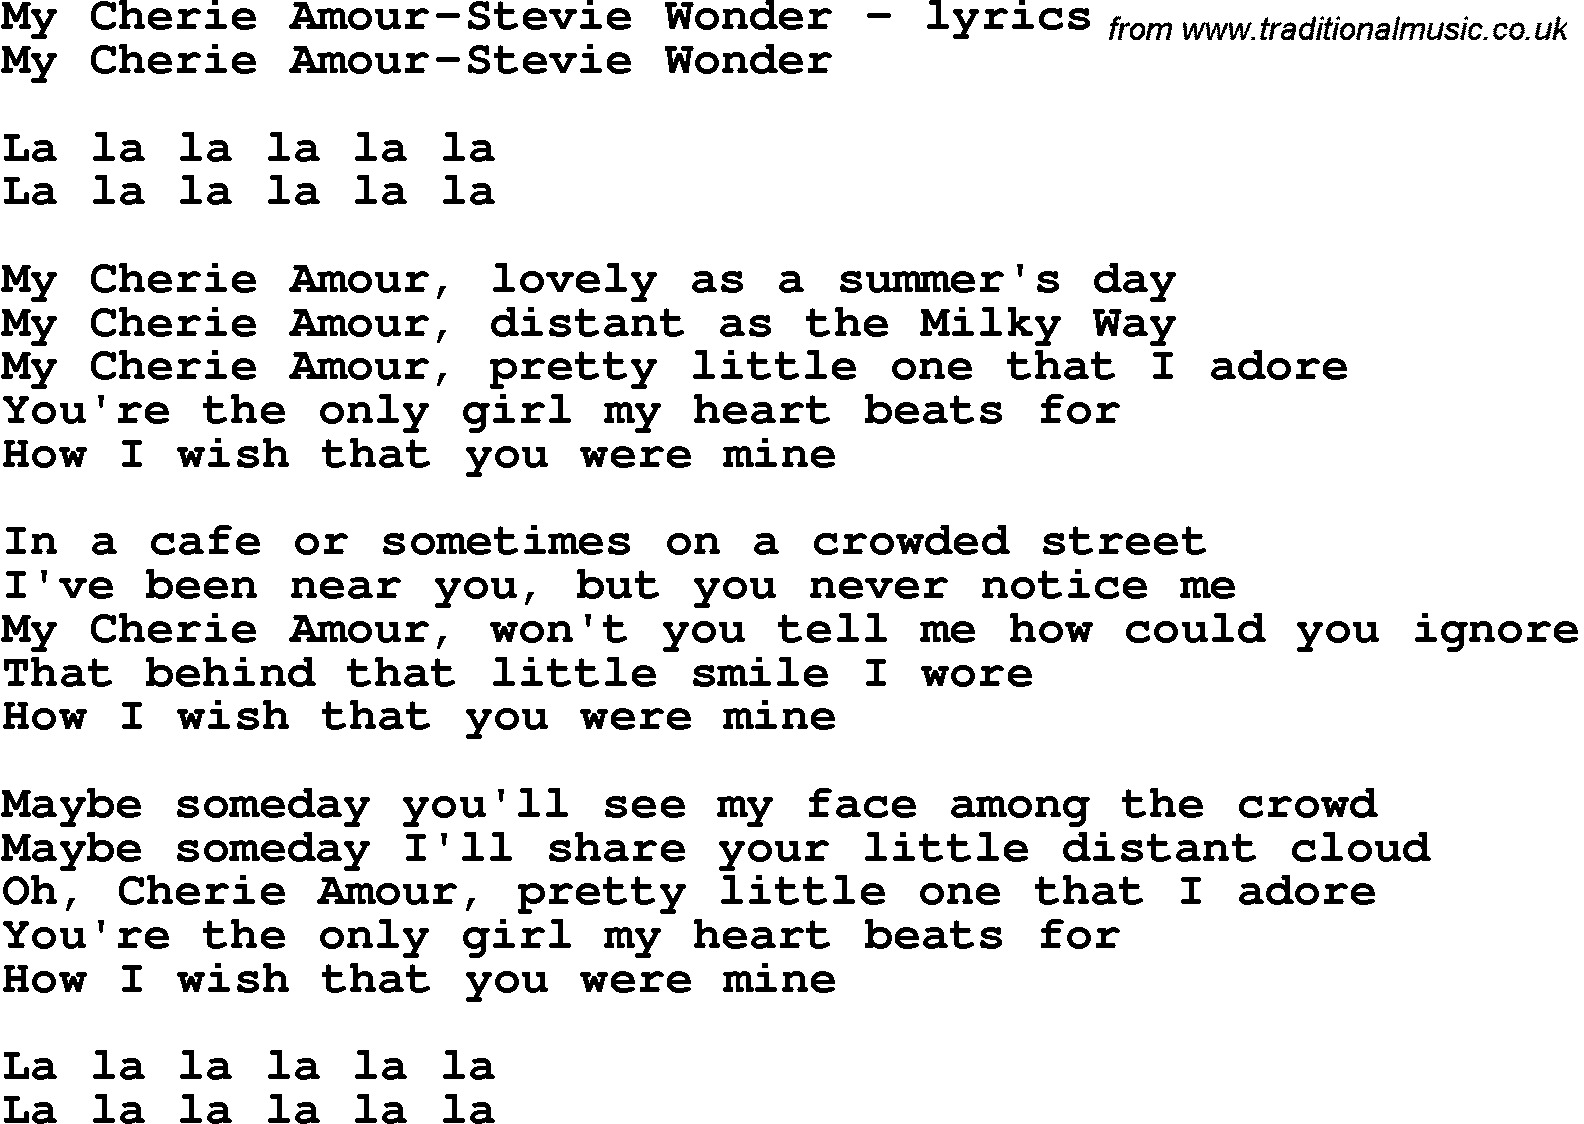 Love Song Lyrics for: My Cherie Amour-Stevie Wonder